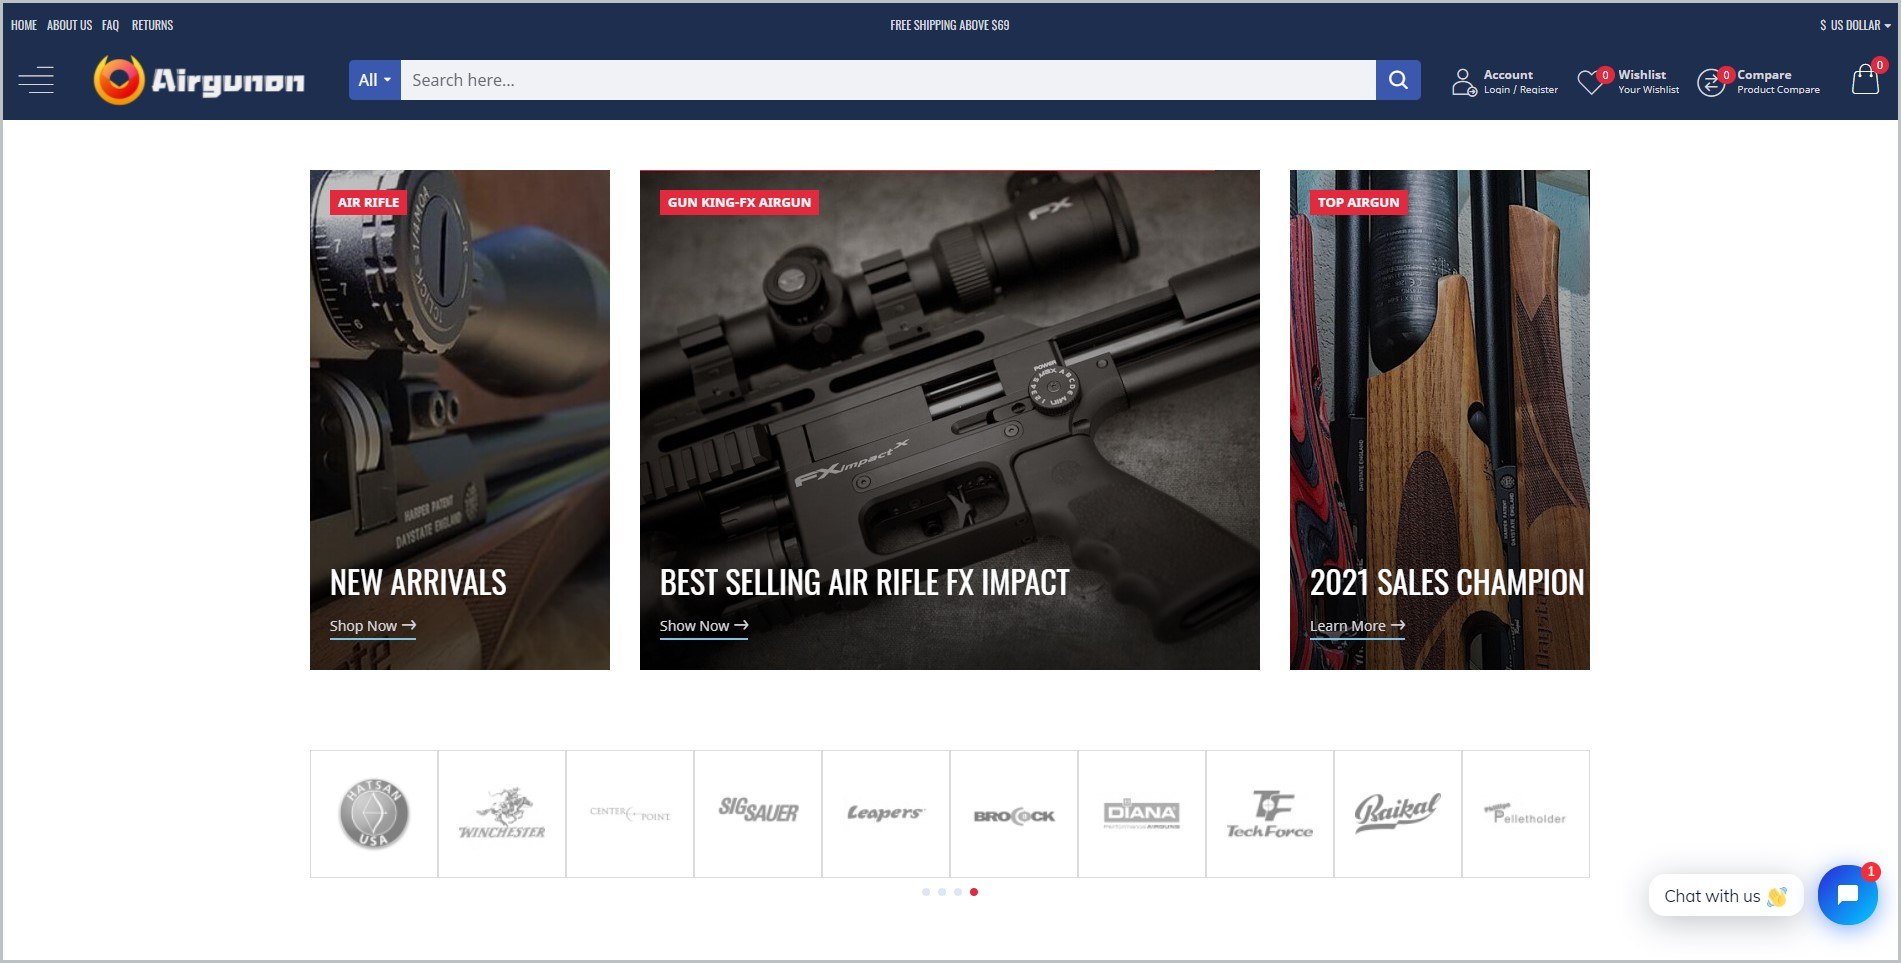 在主页上，深蓝色的标题上有网站的名称和主导航菜单，上面有不同气枪的图片